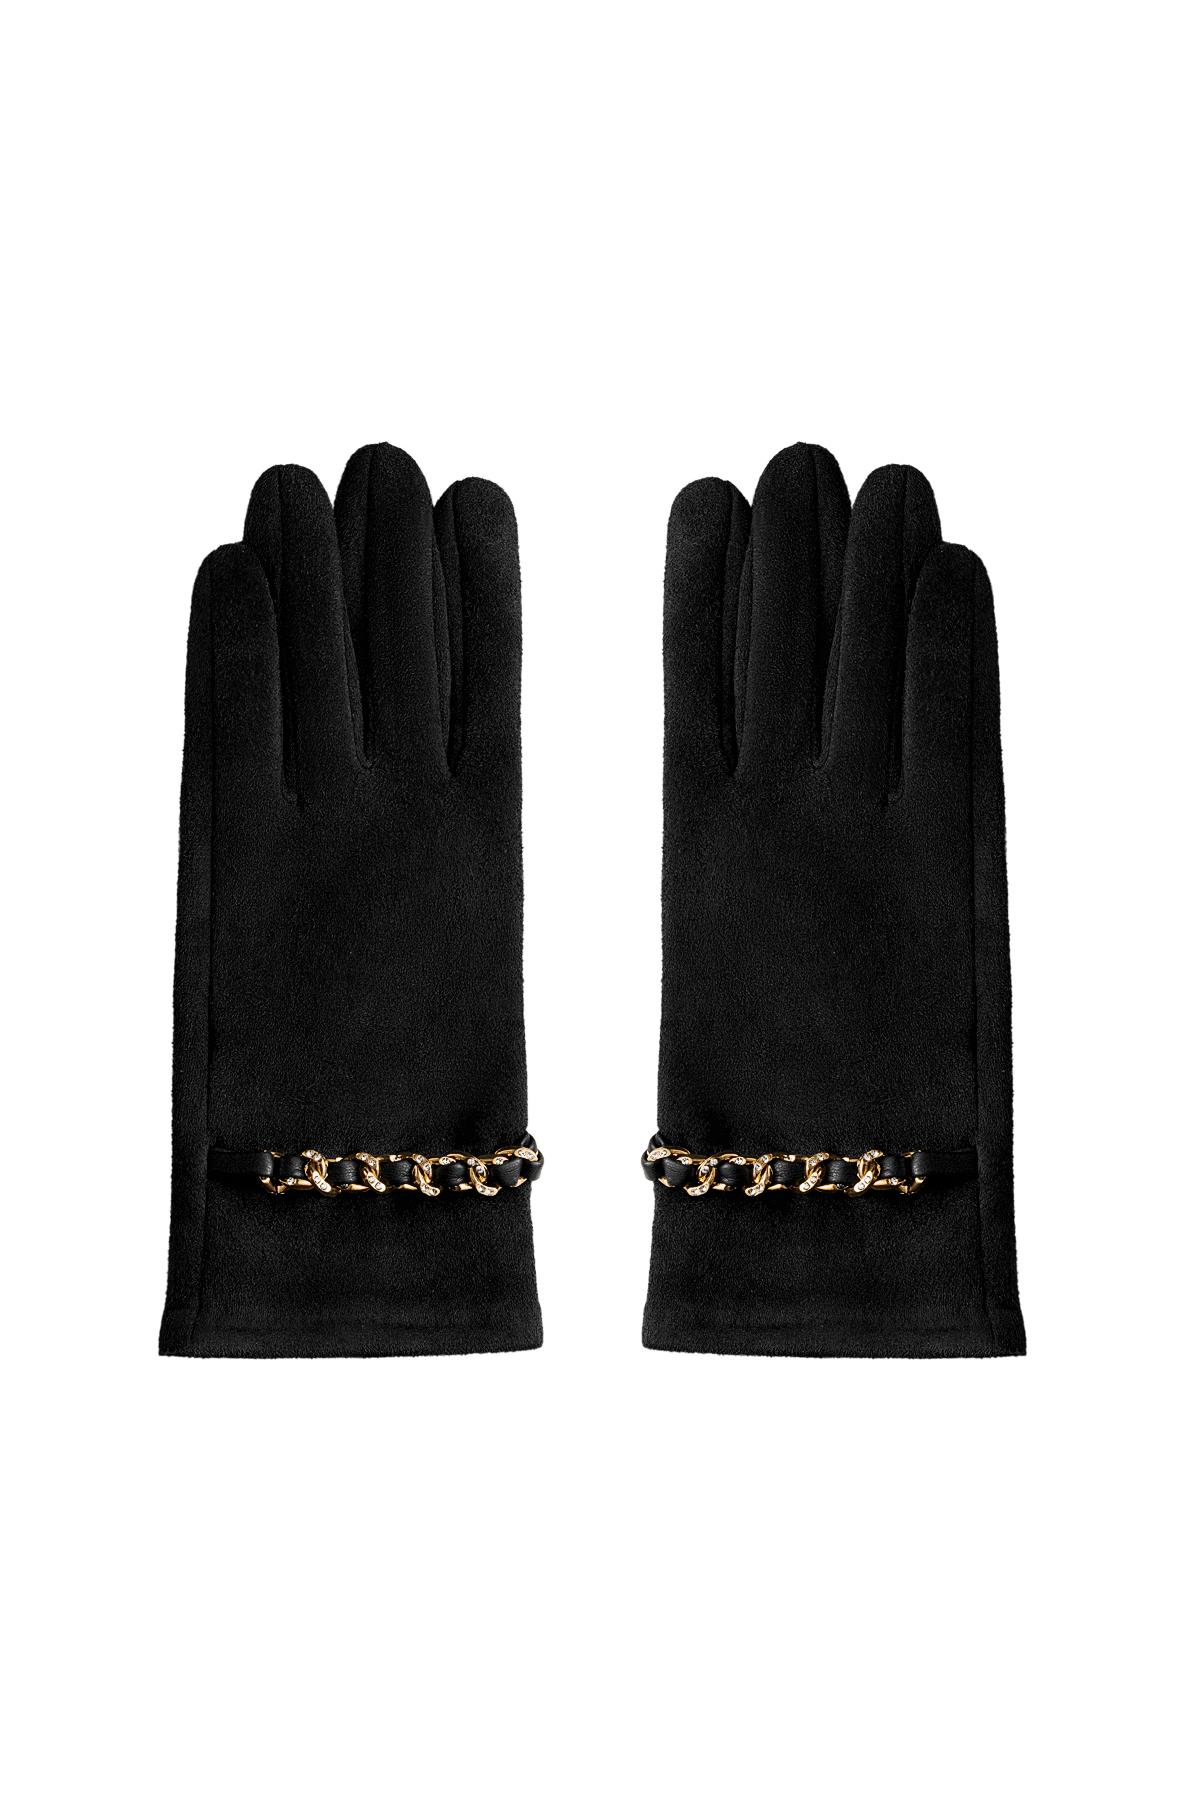 Altın ve zirkon detaylı eldivenler Black Polyester One size 